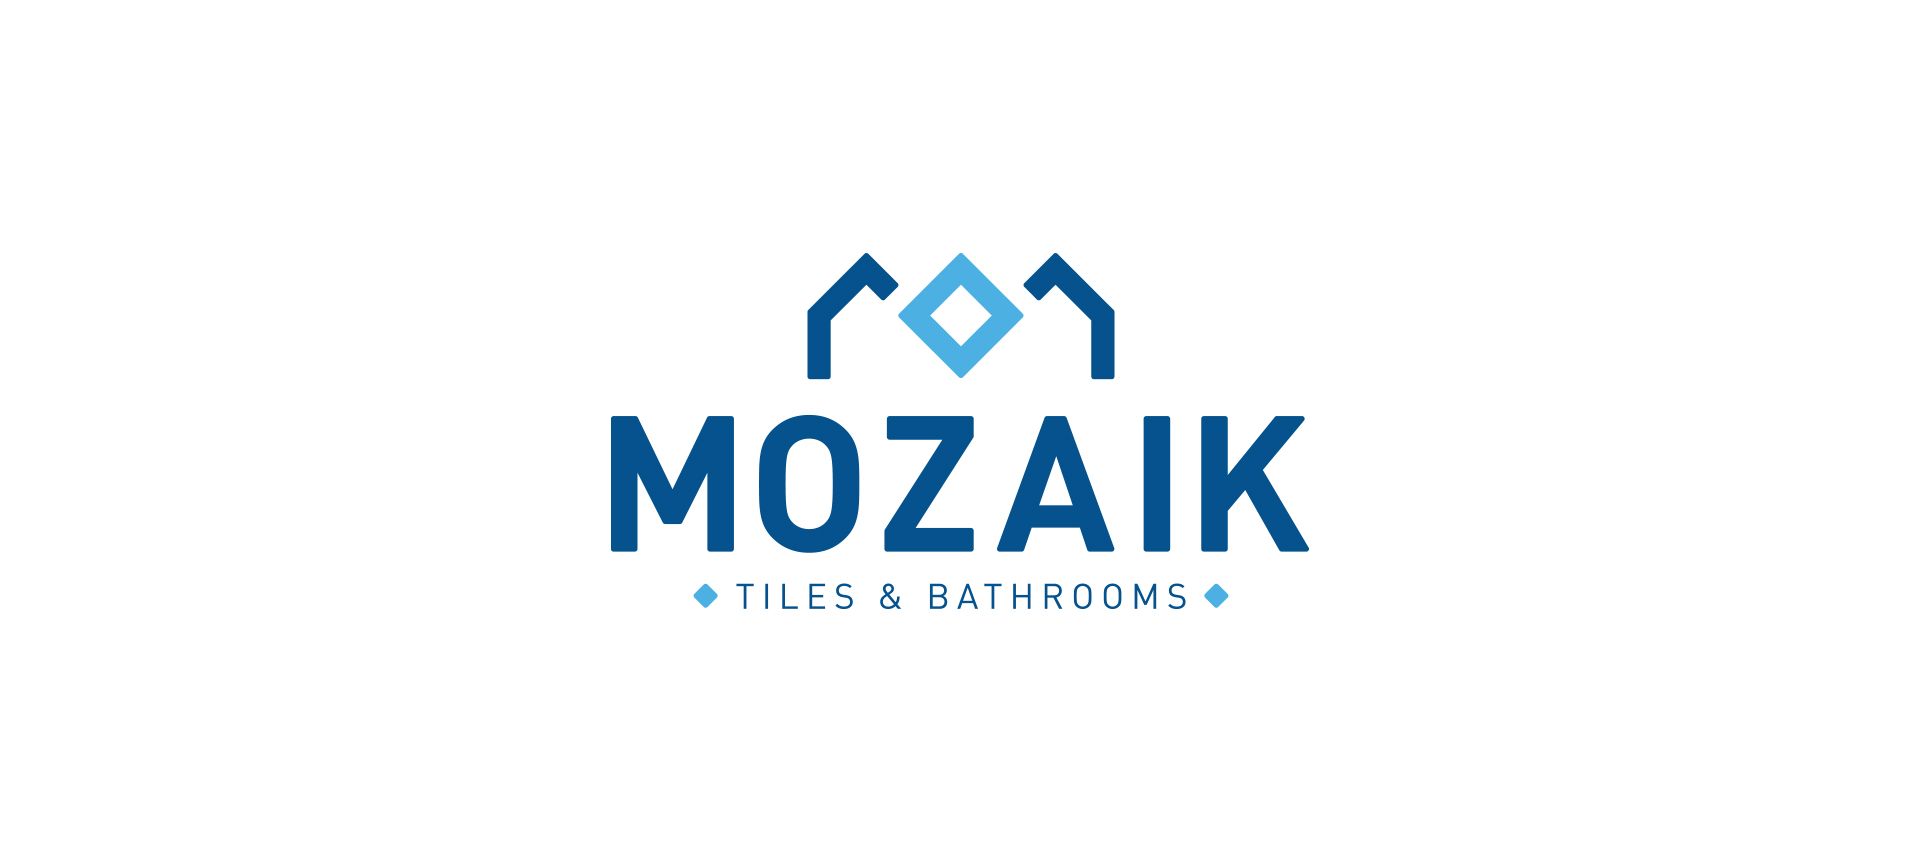 Mozaik logo final design